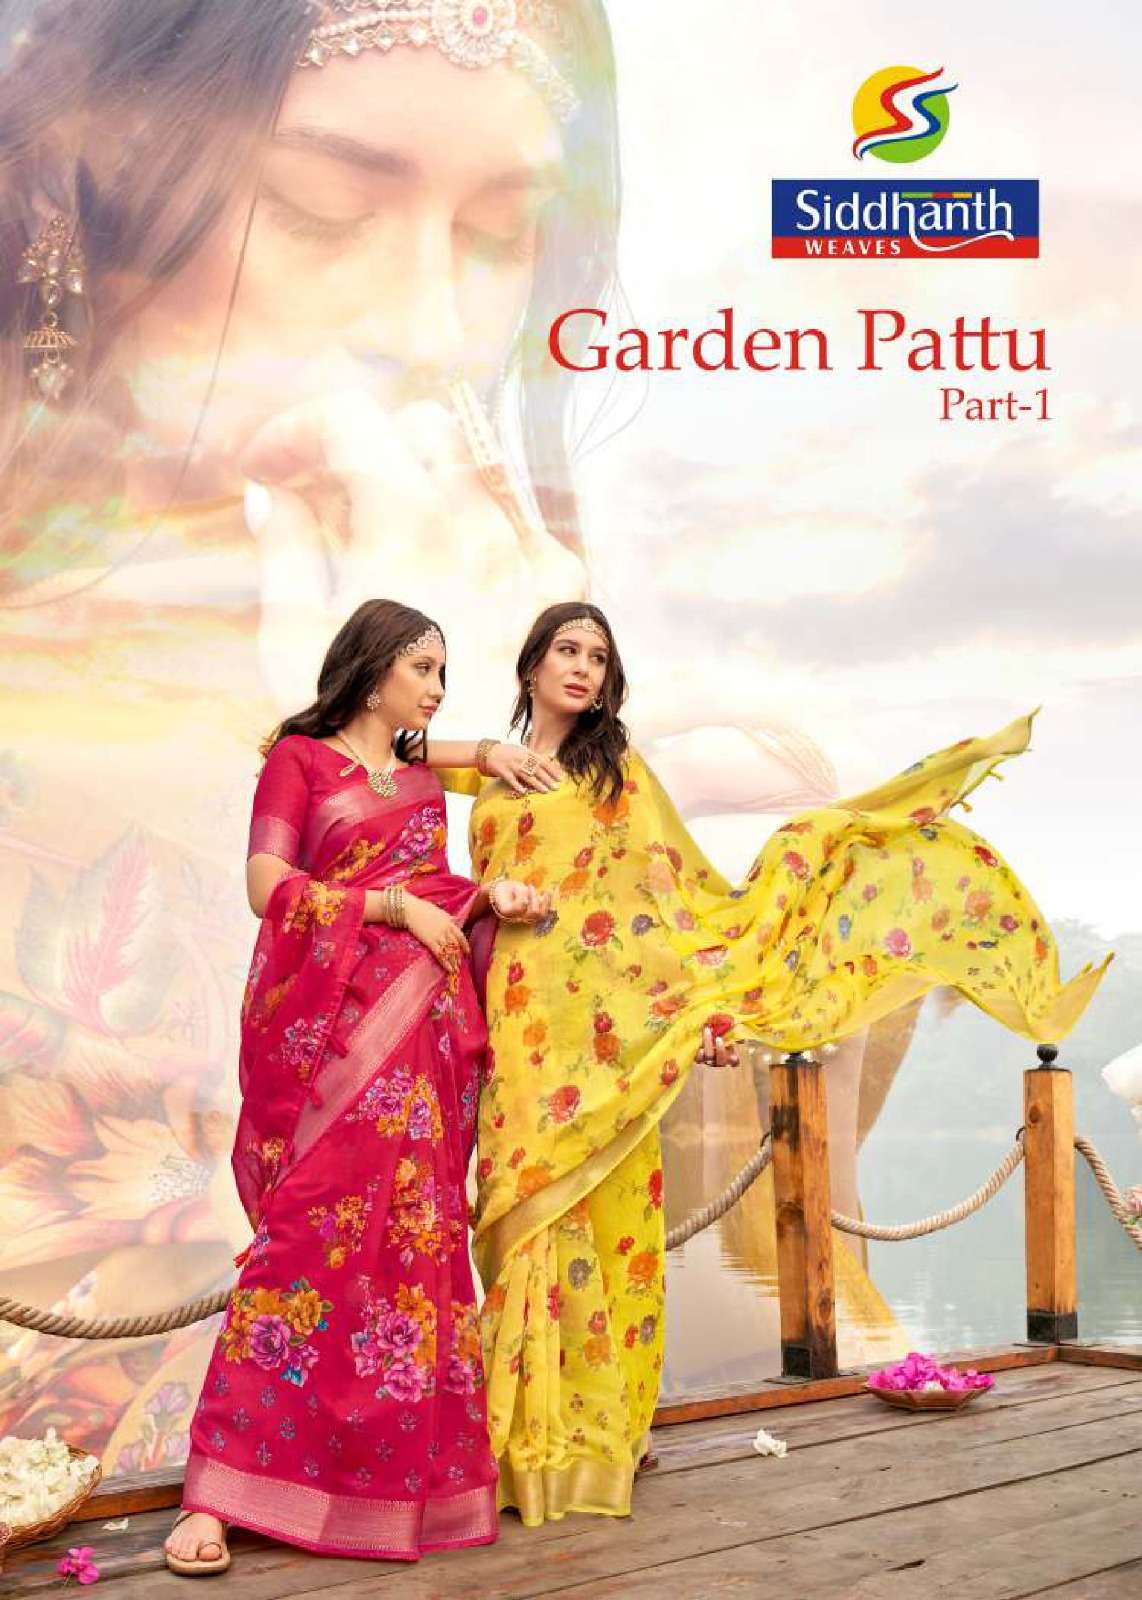 garden pattu by sidhhanth weaves authorized saree supplier in surat 